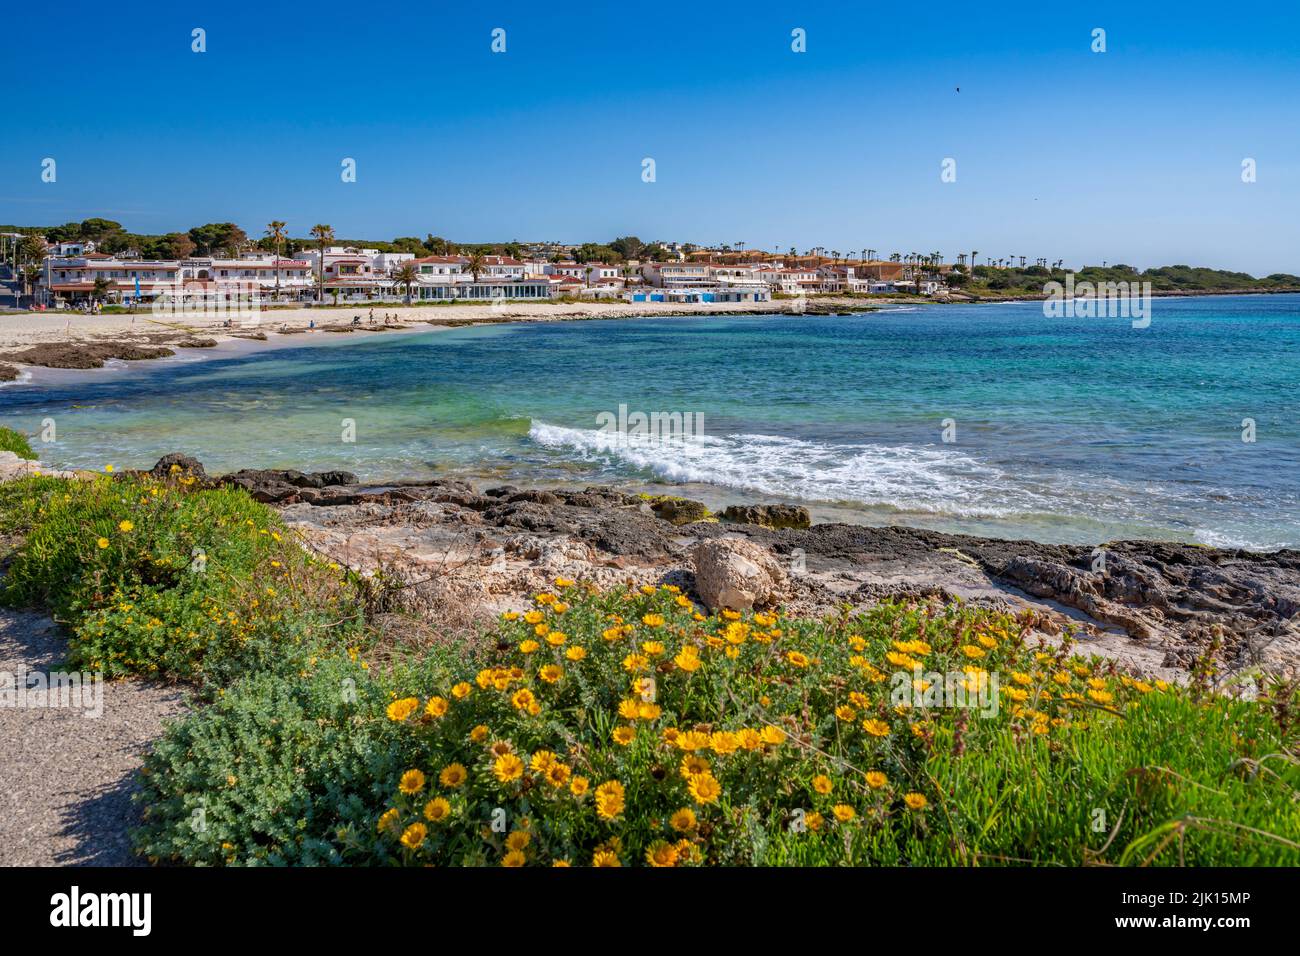 Vista mare e fiori primaverili a Playa Punta prima, Punta prima, Minorca, Isole Baleari, Spagna, Mediterraneo, Europa Foto Stock